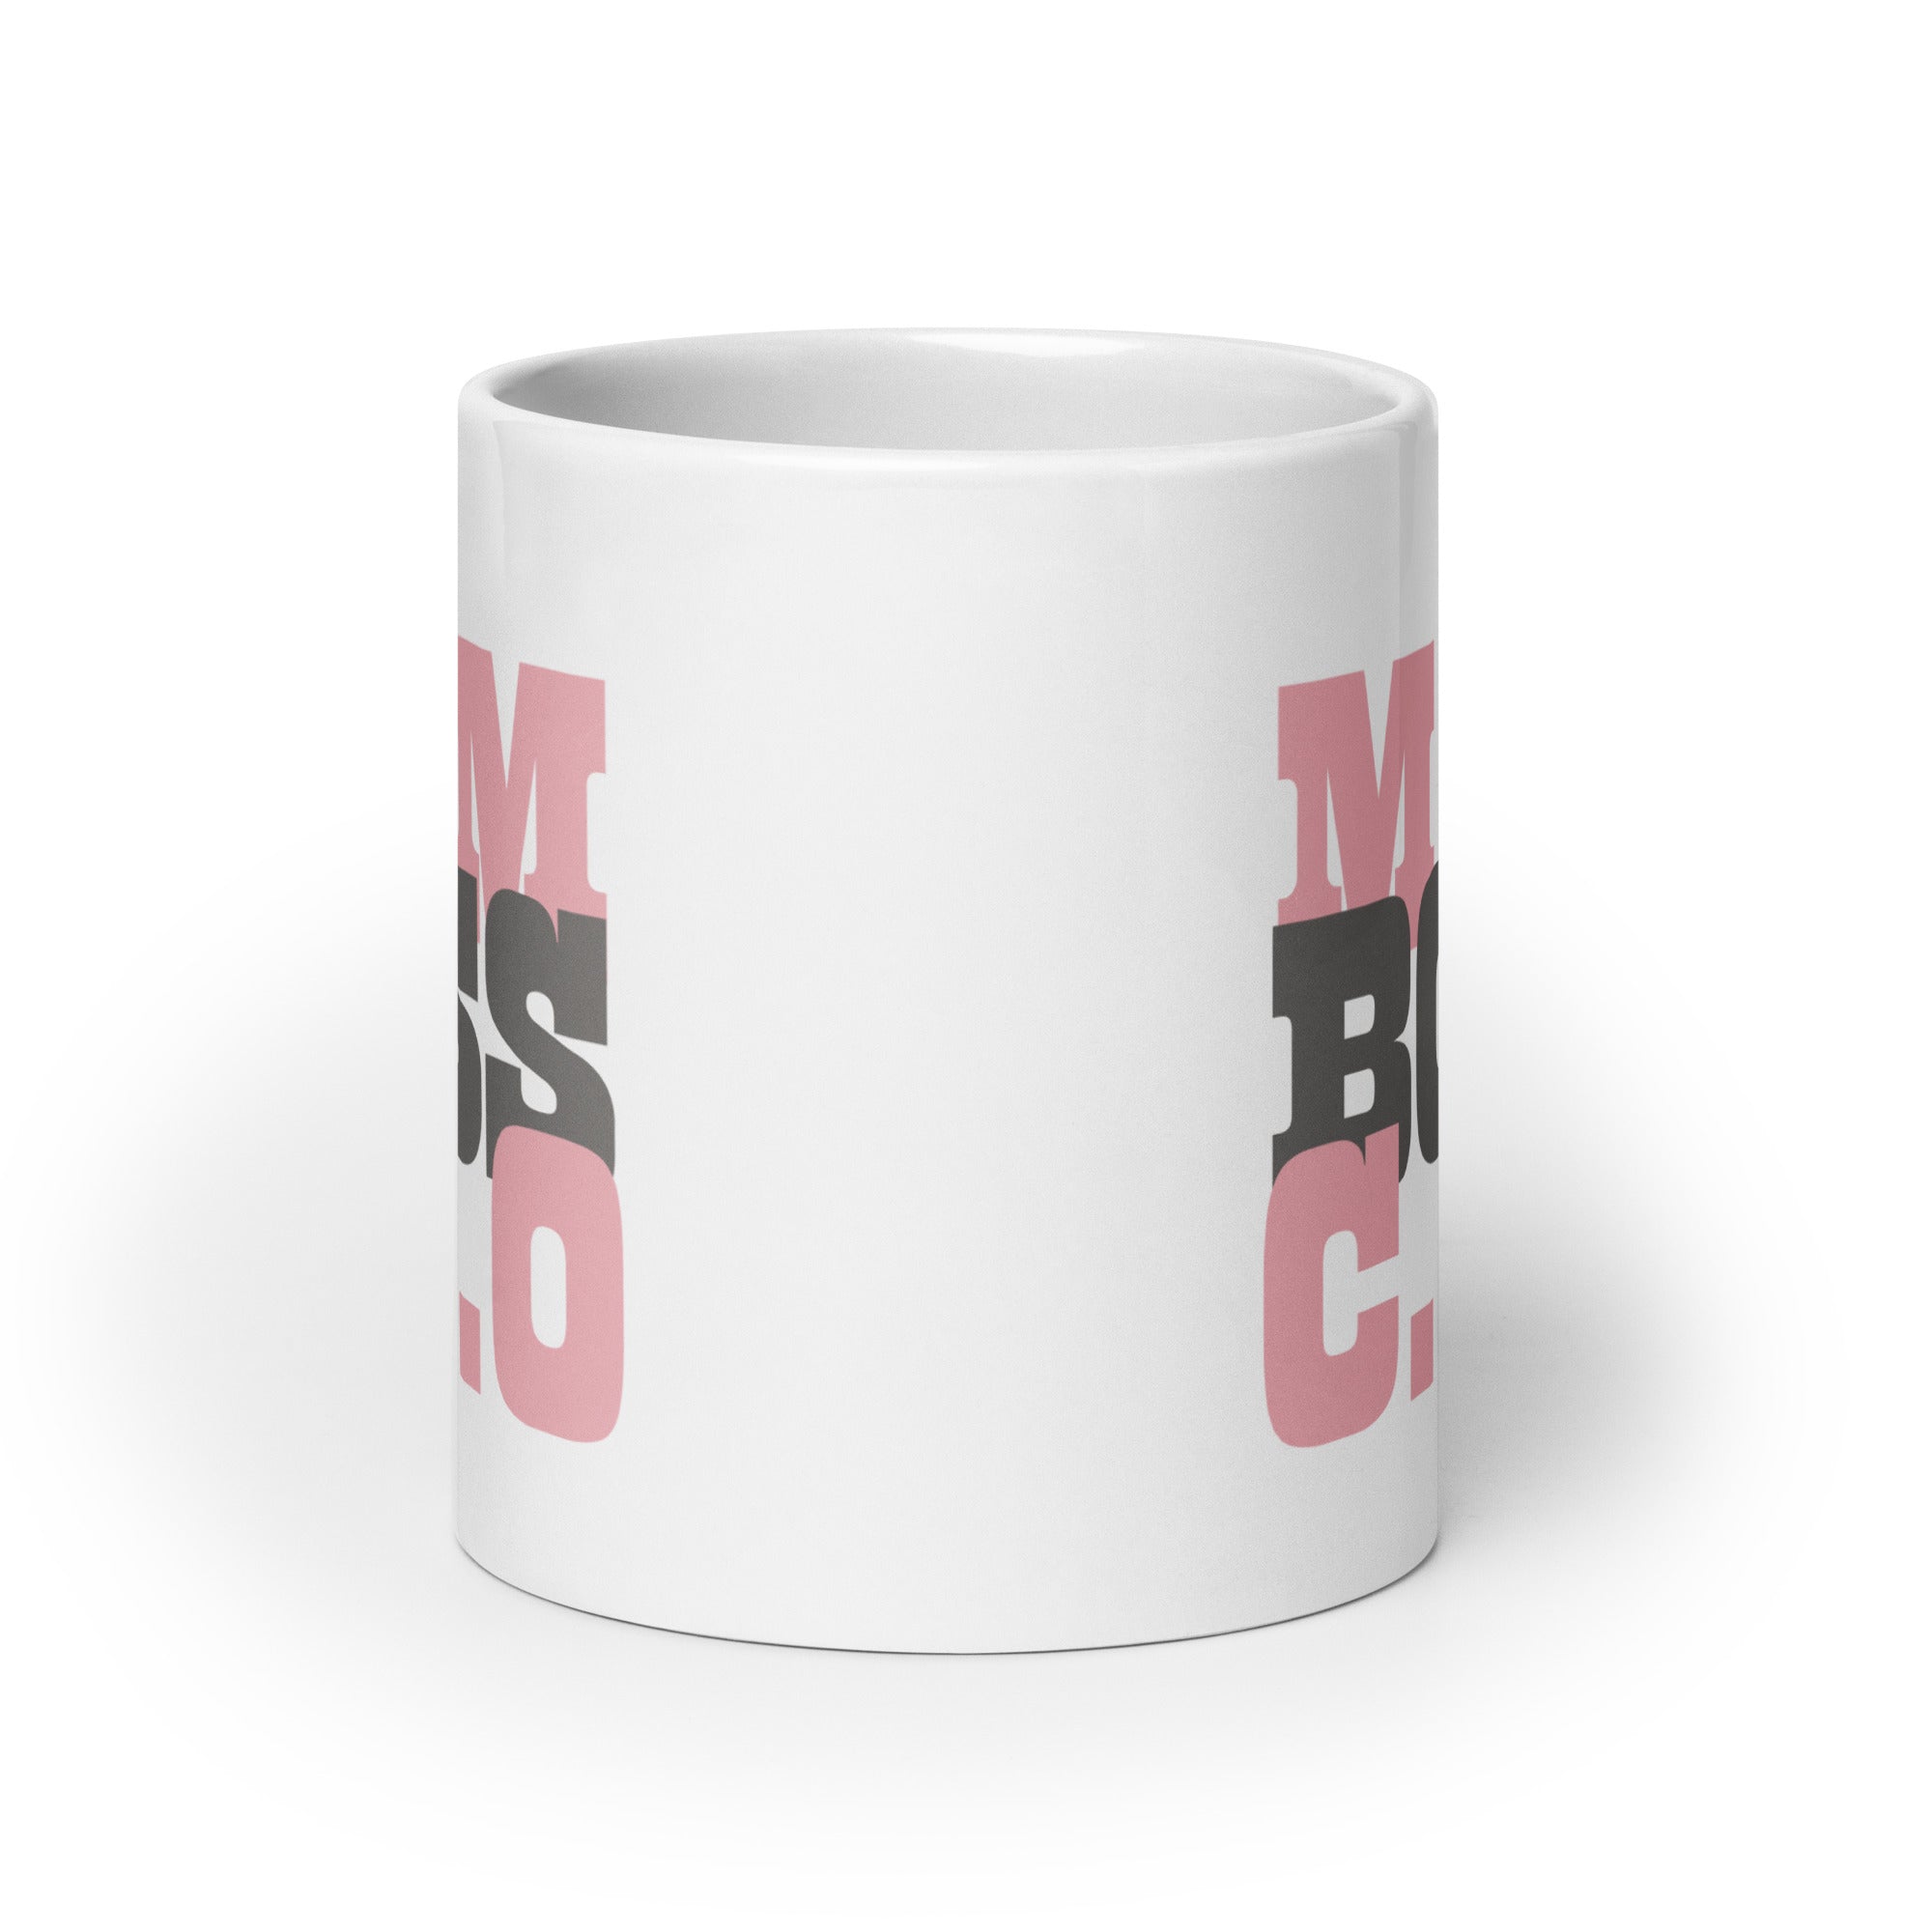 Shop Mom Boss C.E.O Graphic Coffee Mug Cup, Mugs, USA Boutique